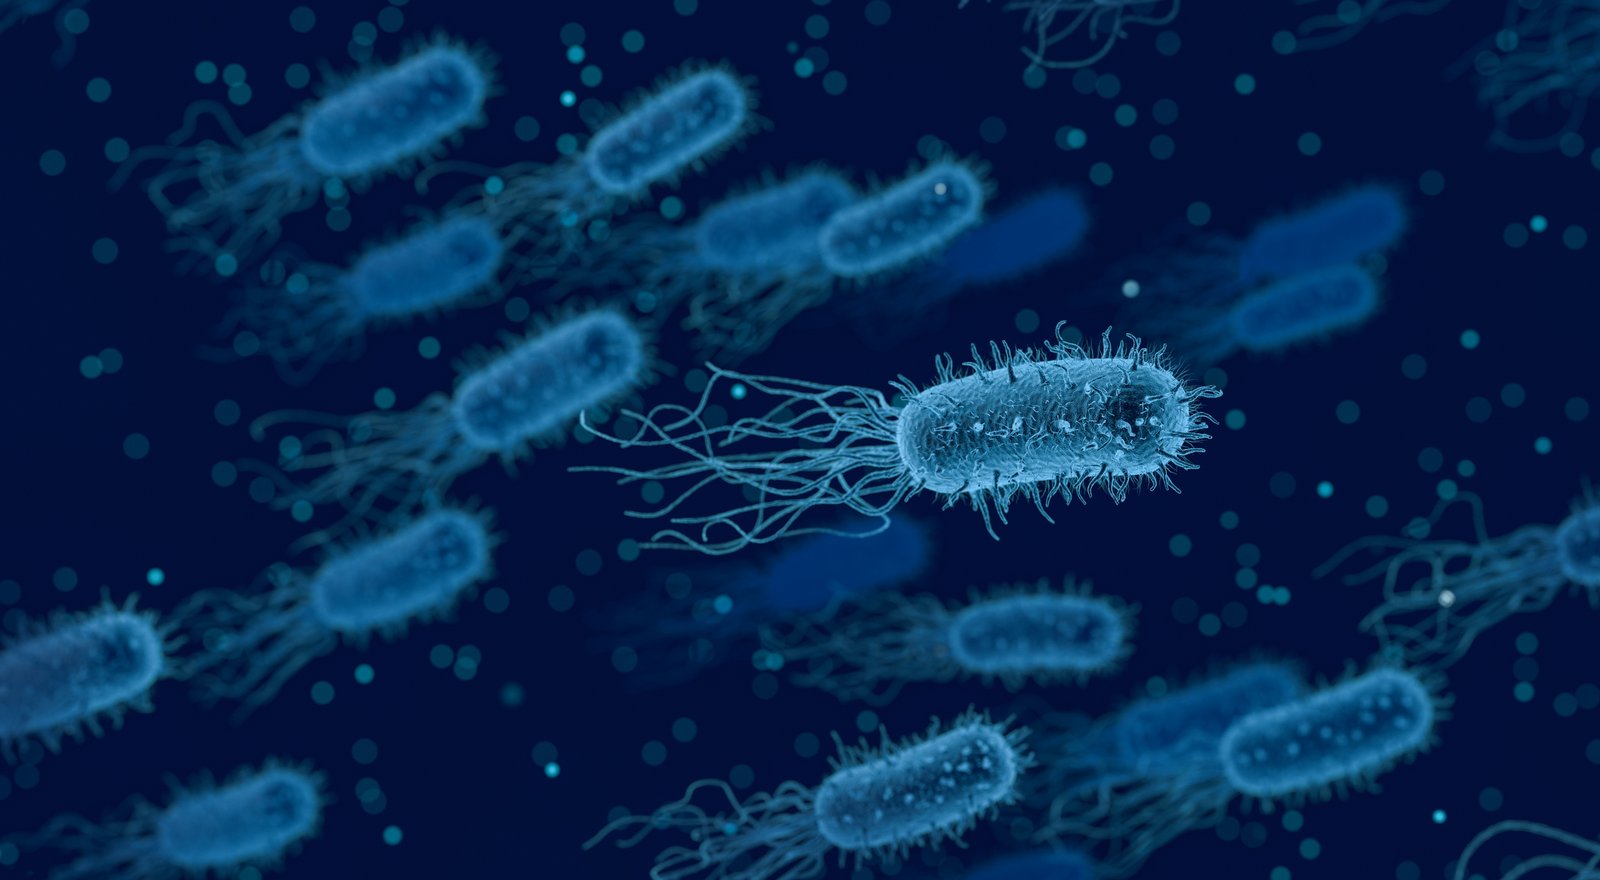 Bactria ca simbol pentru bolile venerice cu transmitere sexuală